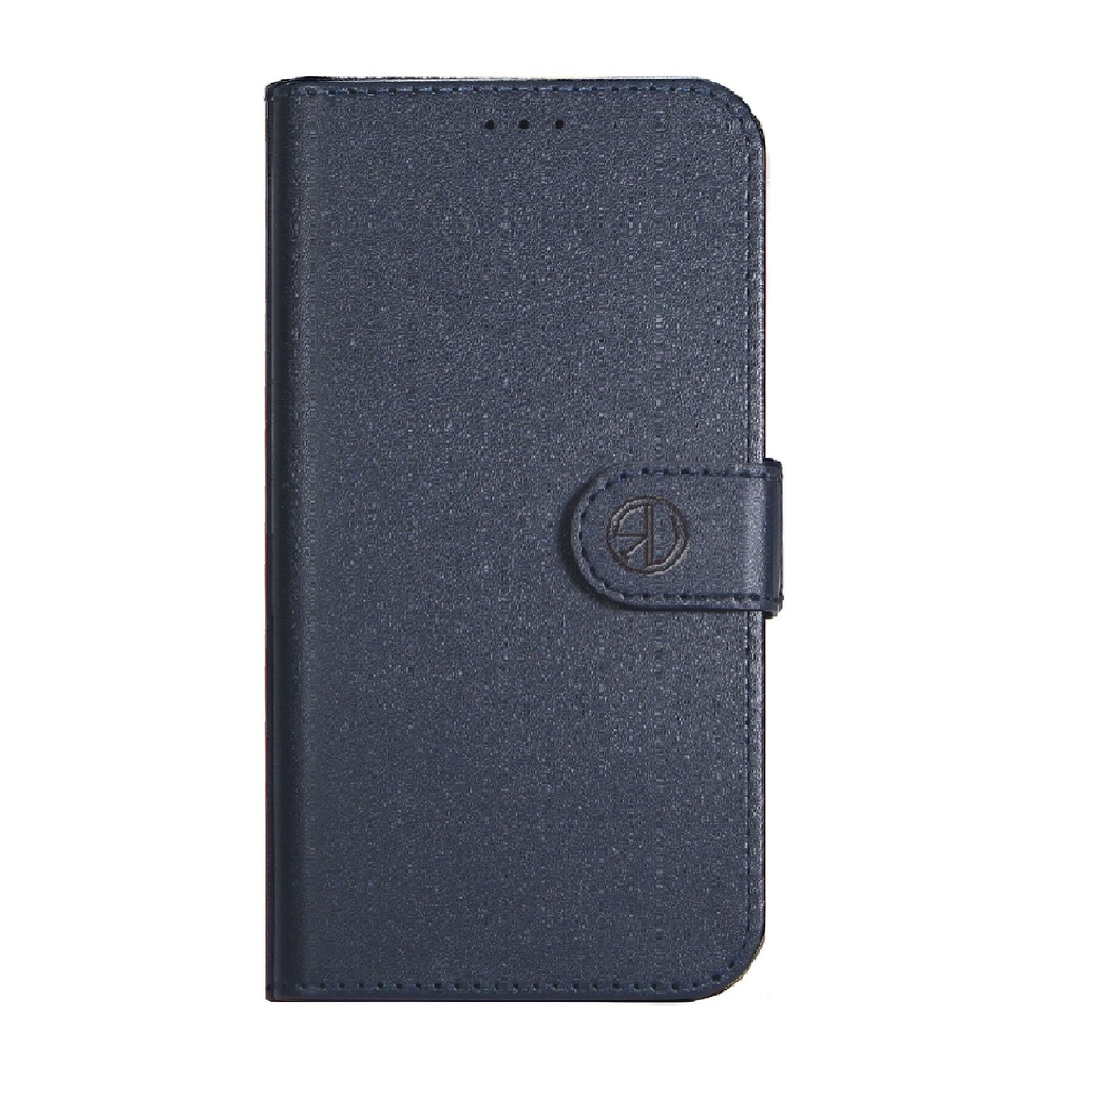 Super Wallet Case for iPhone 7/8/SE dark blue